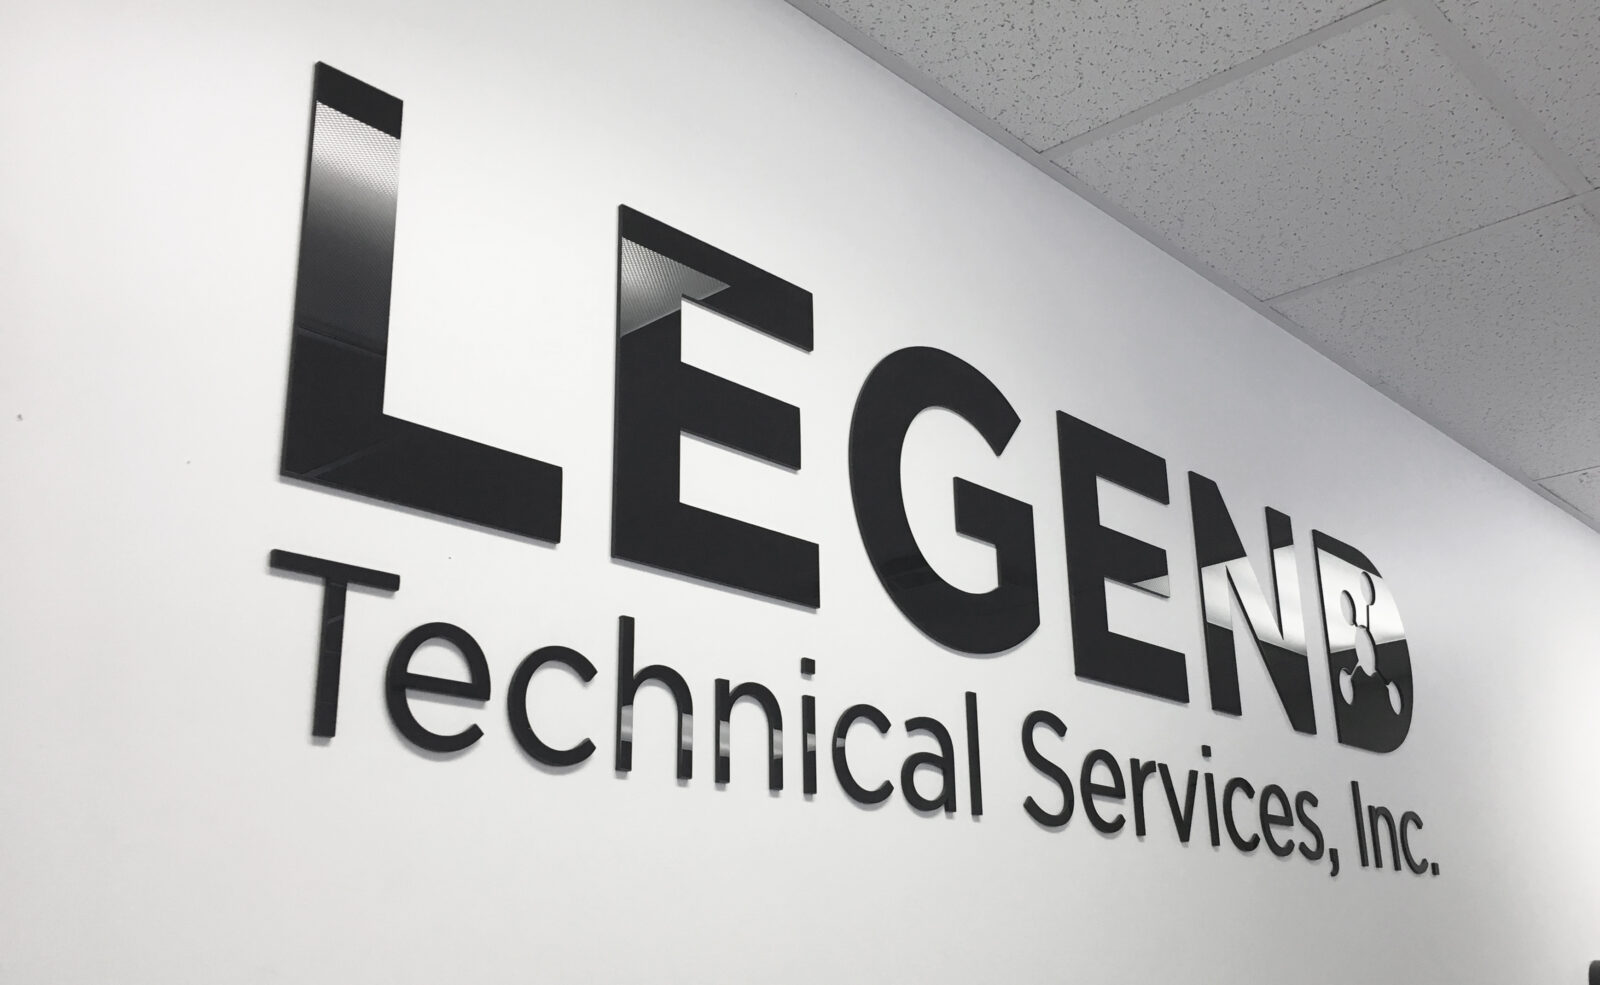 Legend Technical Services of AZ